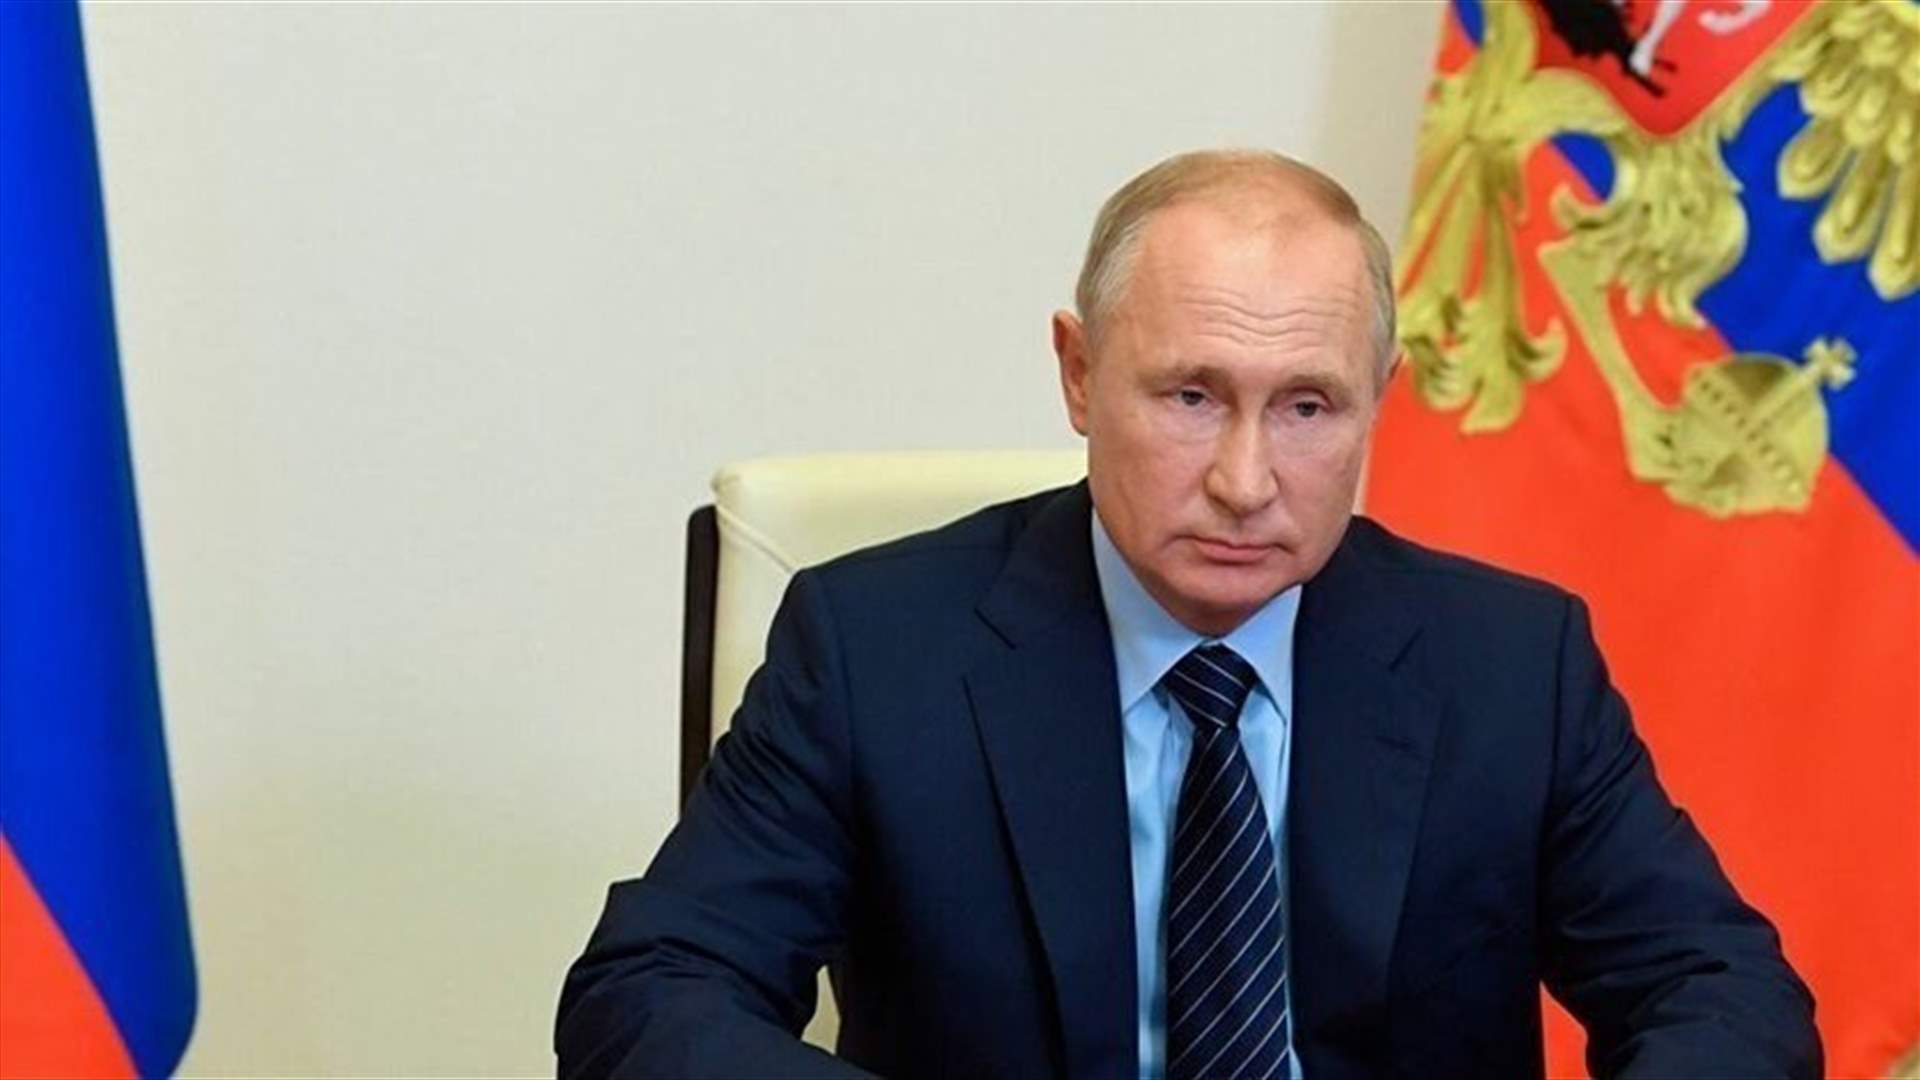 بوتين يندد بإطلاق النار في مدرسة روسية: عمل إرهابي غير إنساني